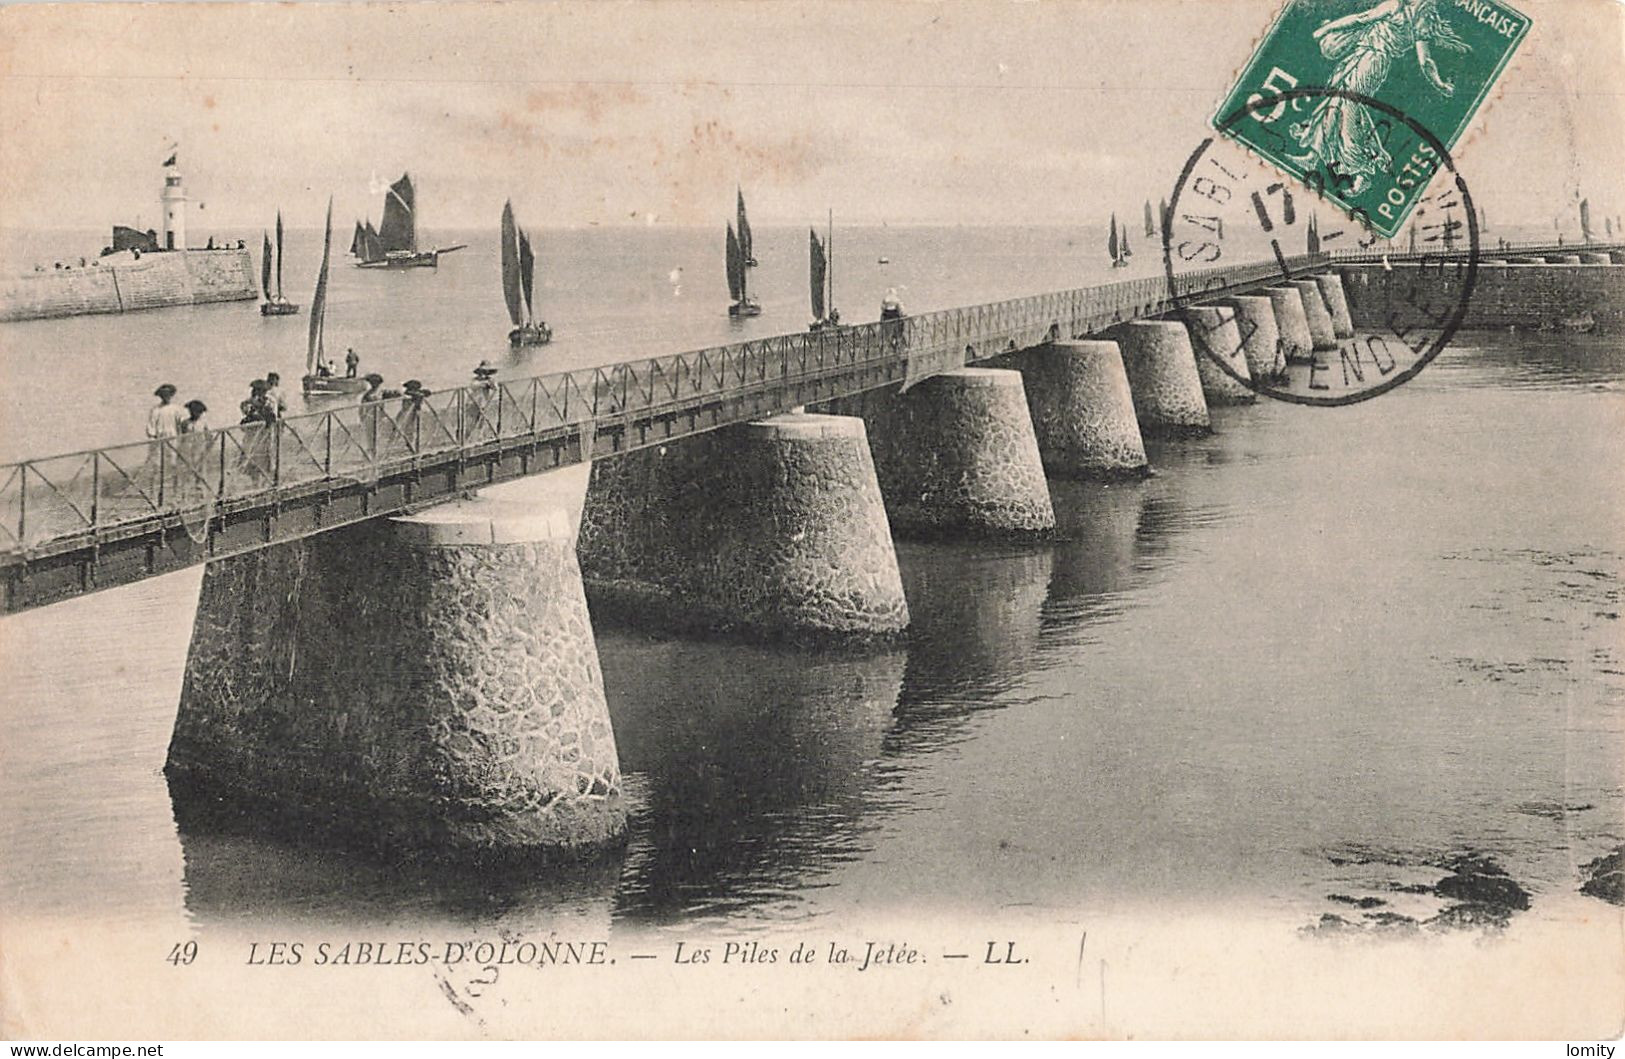 Destockage lot de 8 cartes postales CPA de Vendée les Sables d' Olonne